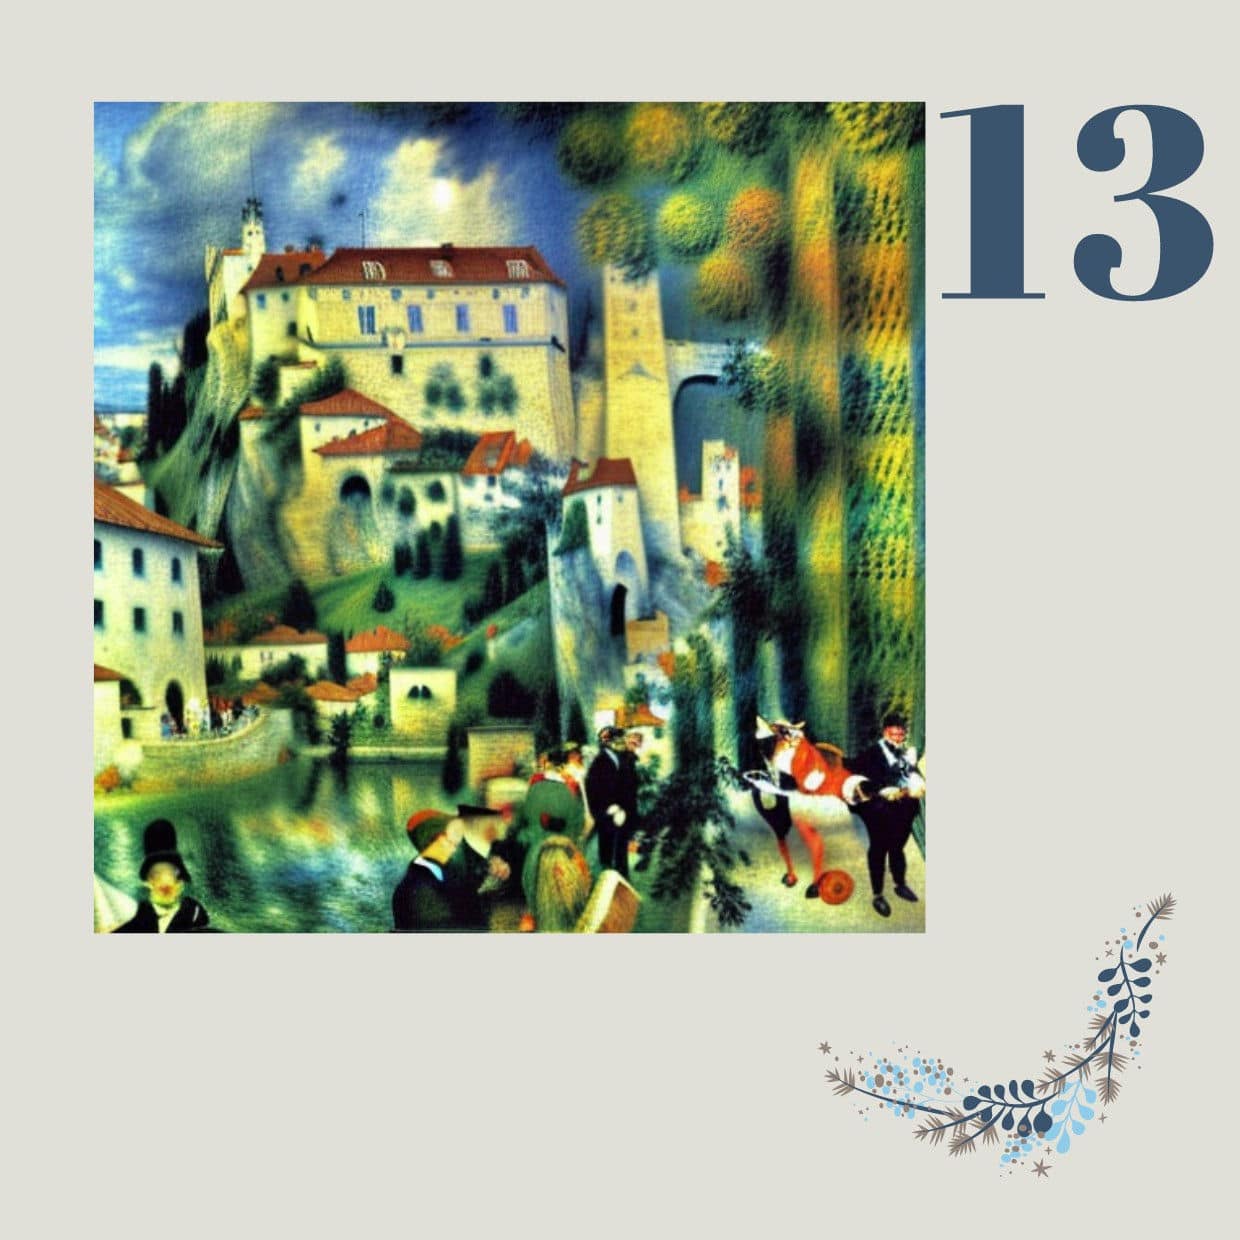 Die Riegersburg im Stil von Auguste Renoir - einem der bedeutendsten französischen Maler des Impressionismus.